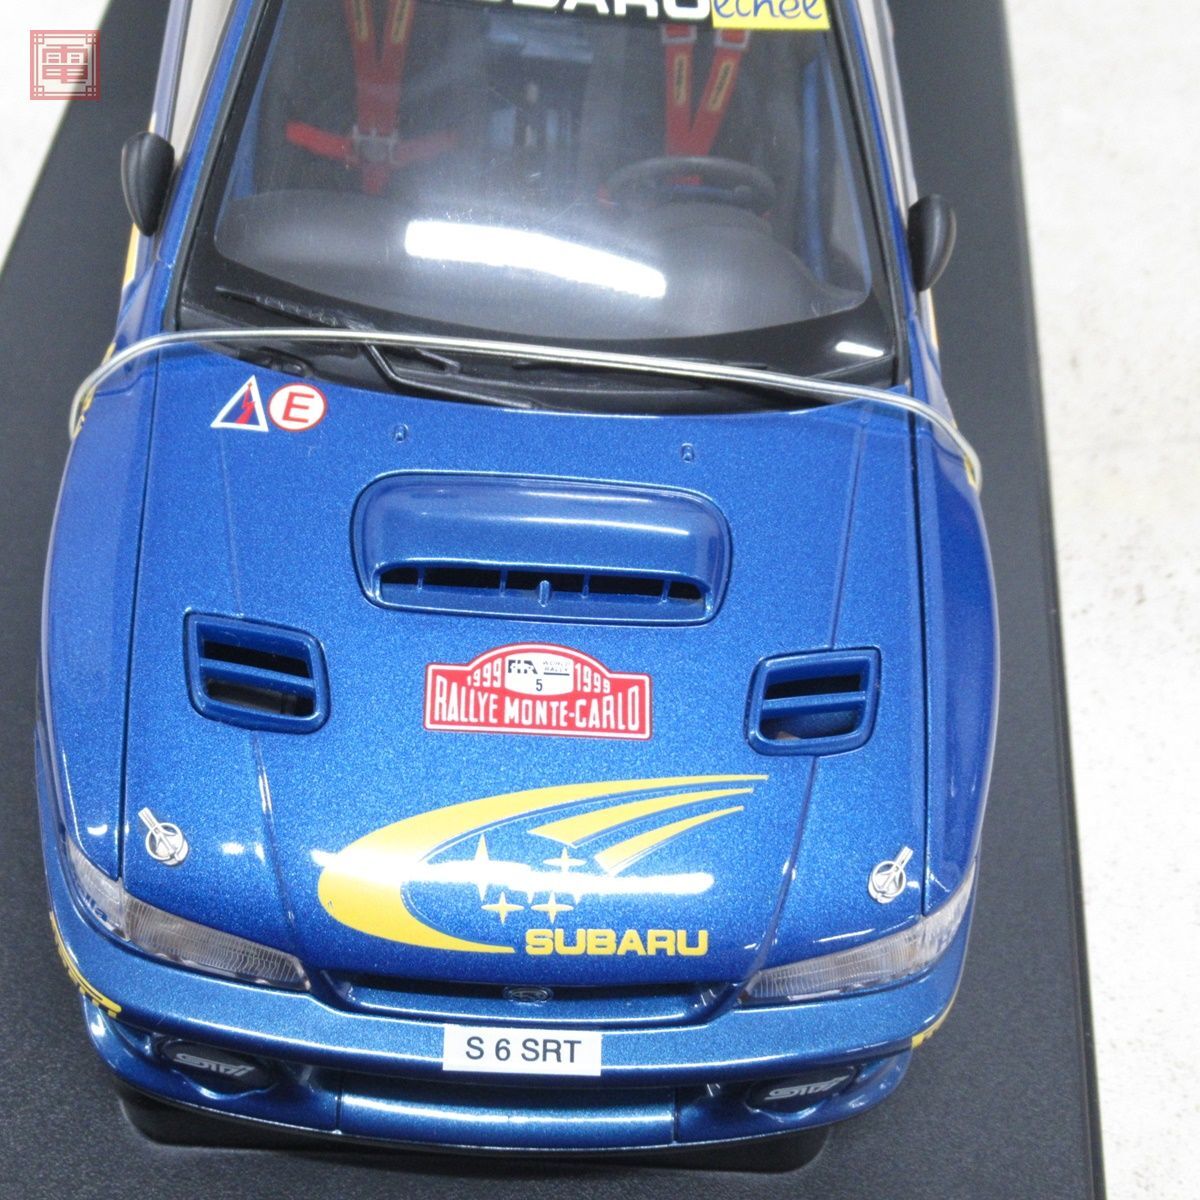 オートアート 1/18 スバル インプレッサ WRC 1999 モンテカルロラリー #5 No.89992 AUTOart SUBARU IMPREZA RALLY MONTE CARLO【20_画像5